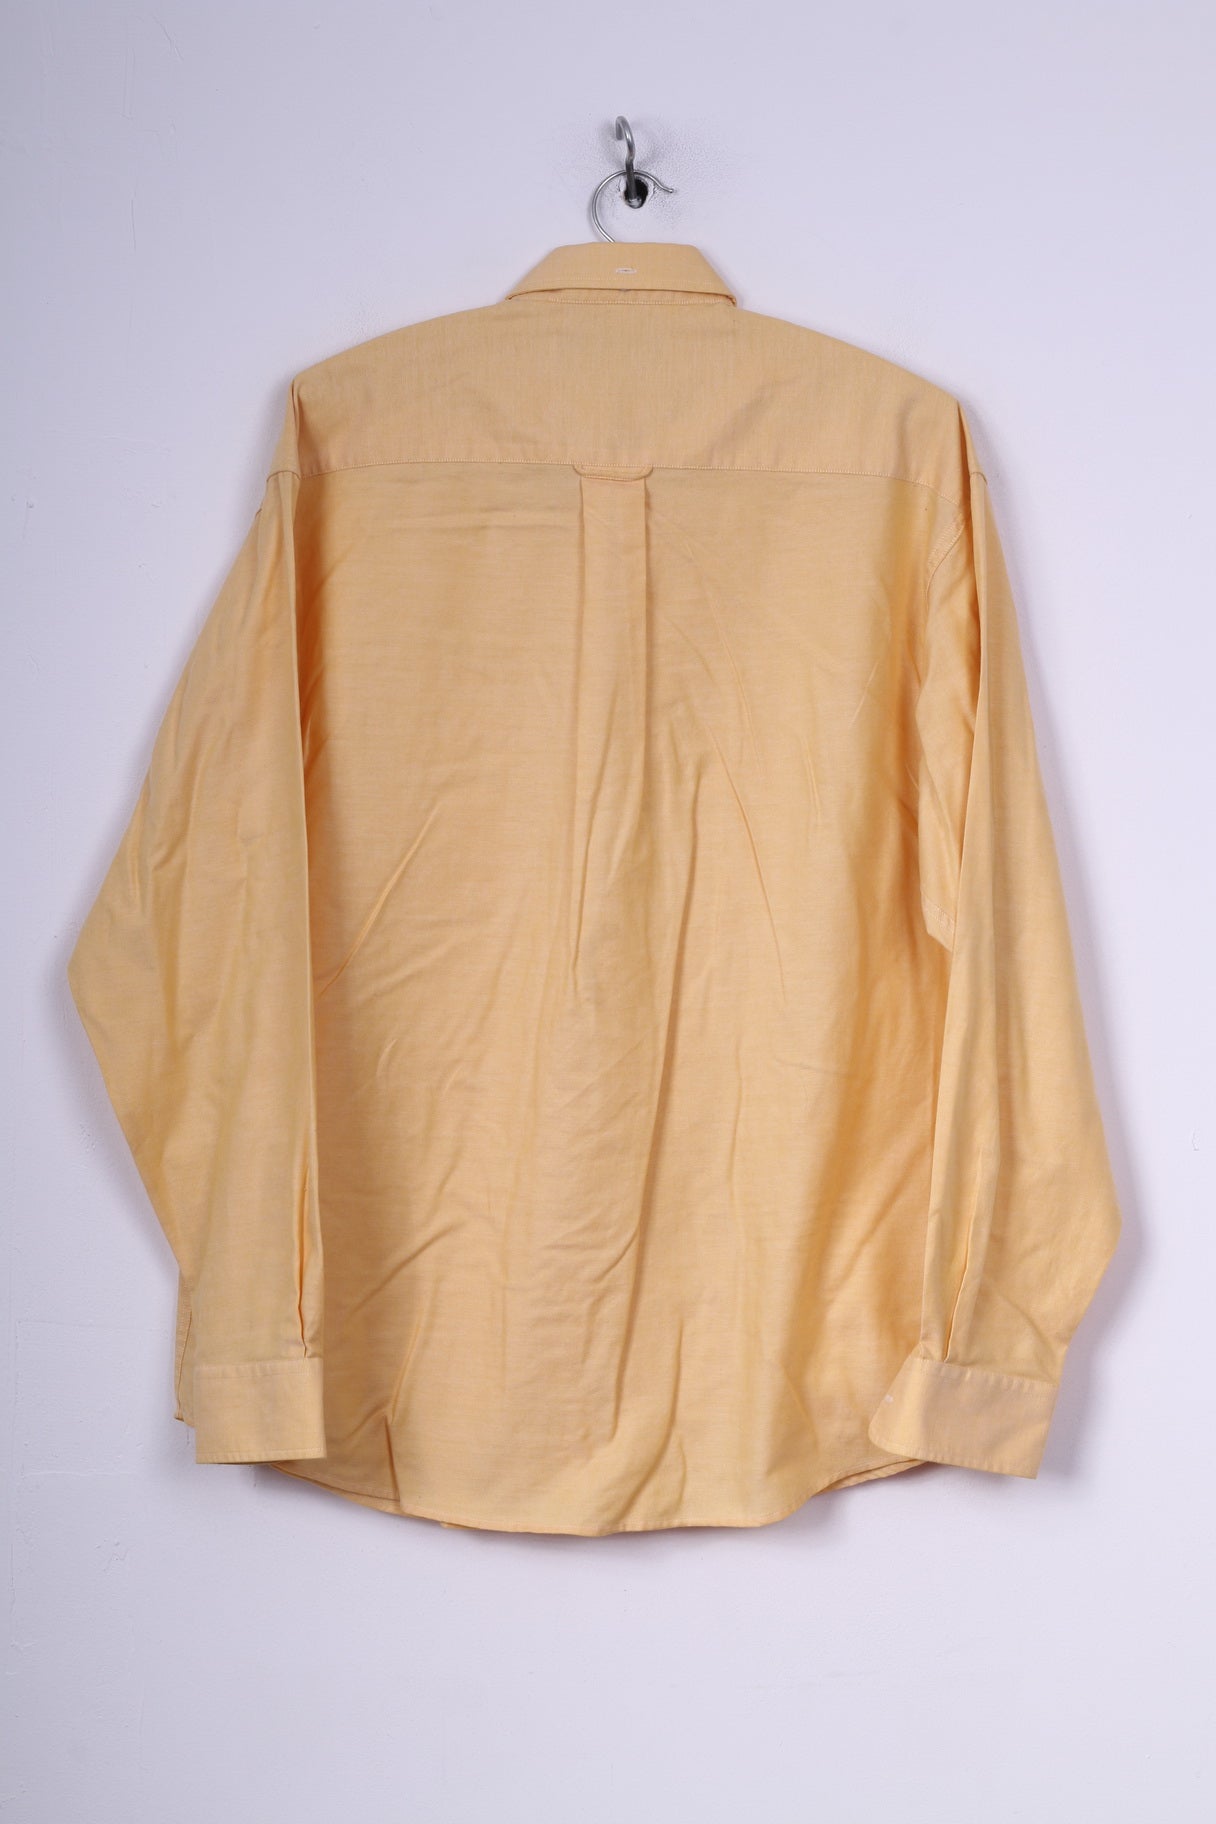 Ben Sherman Mens 15.5 39/40 XL Casual Shirt Button Down Collar Yellow Long Sleeve